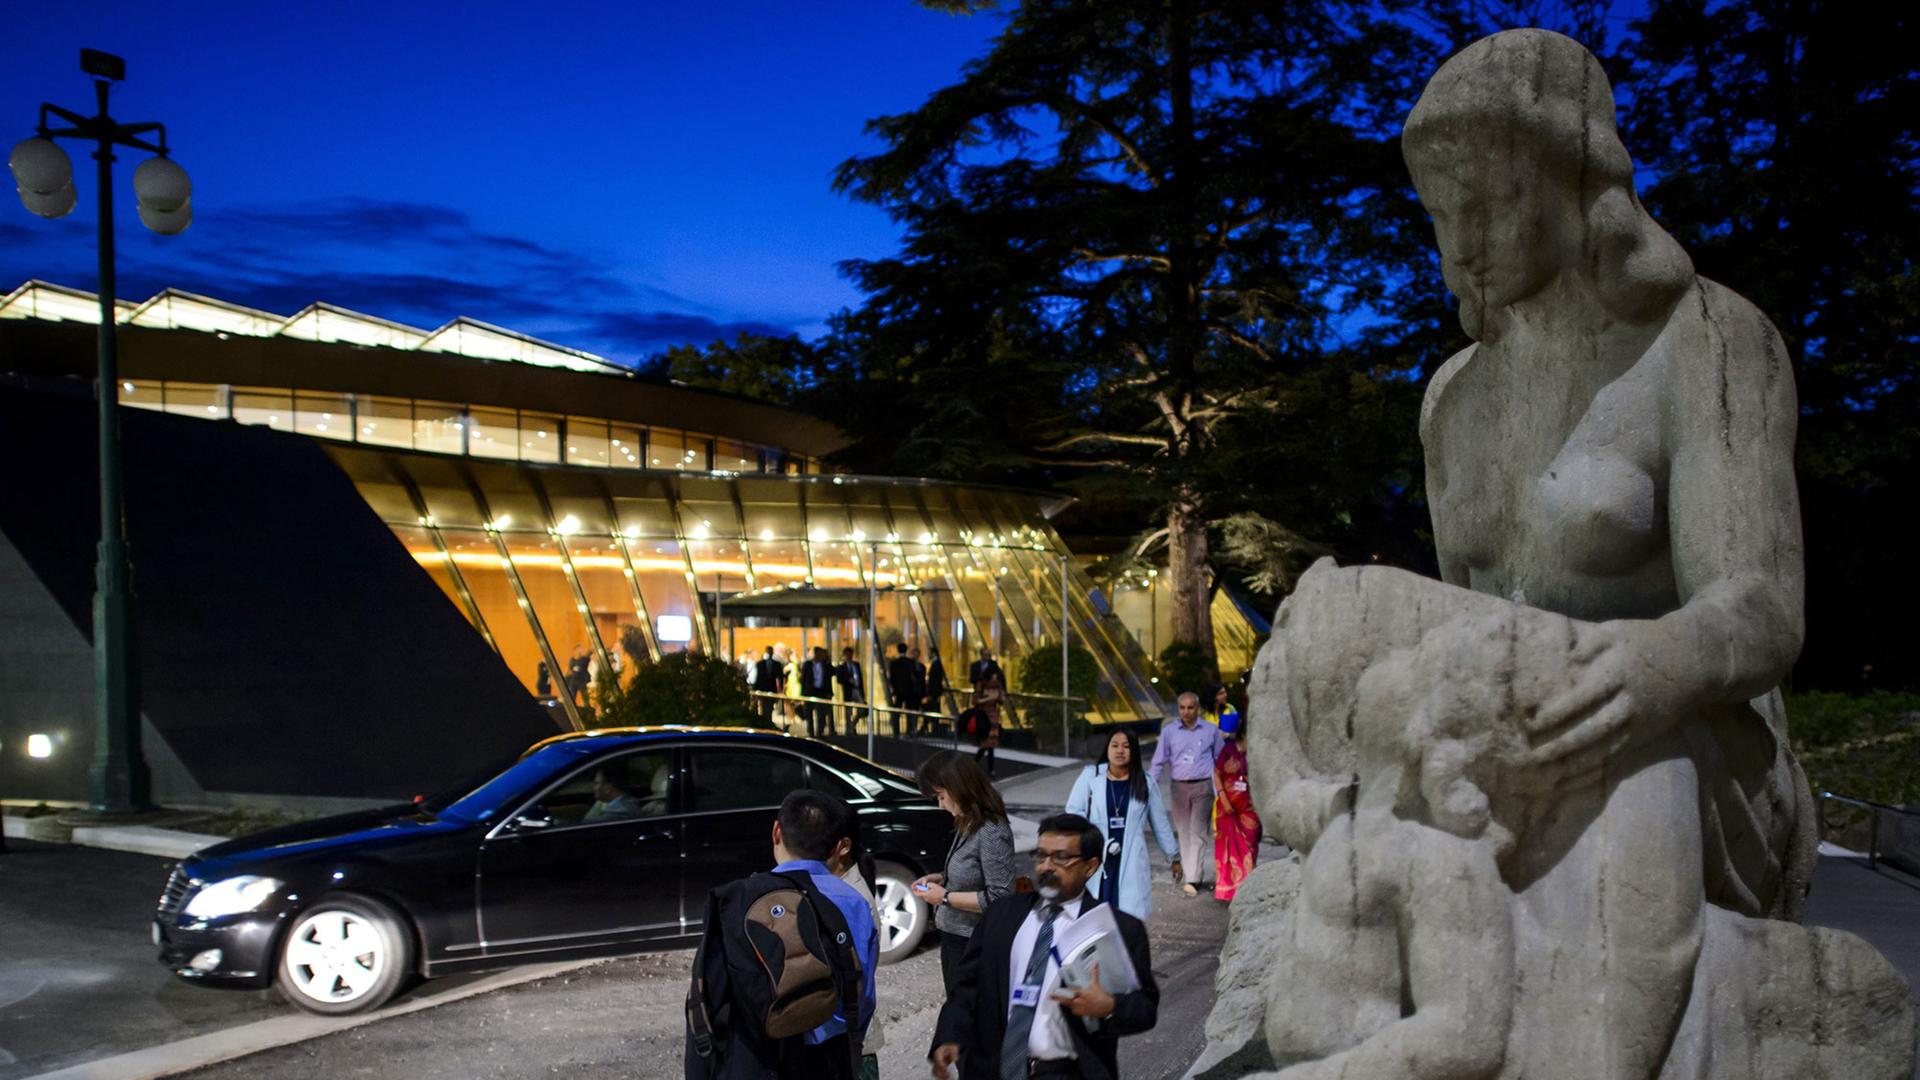 Ländervertreter verlassen ein Treffen im Hauptquartier der Welthandelsorganisation (WTO) in Genf in der Schweiz am Abend des 31.07.2014.